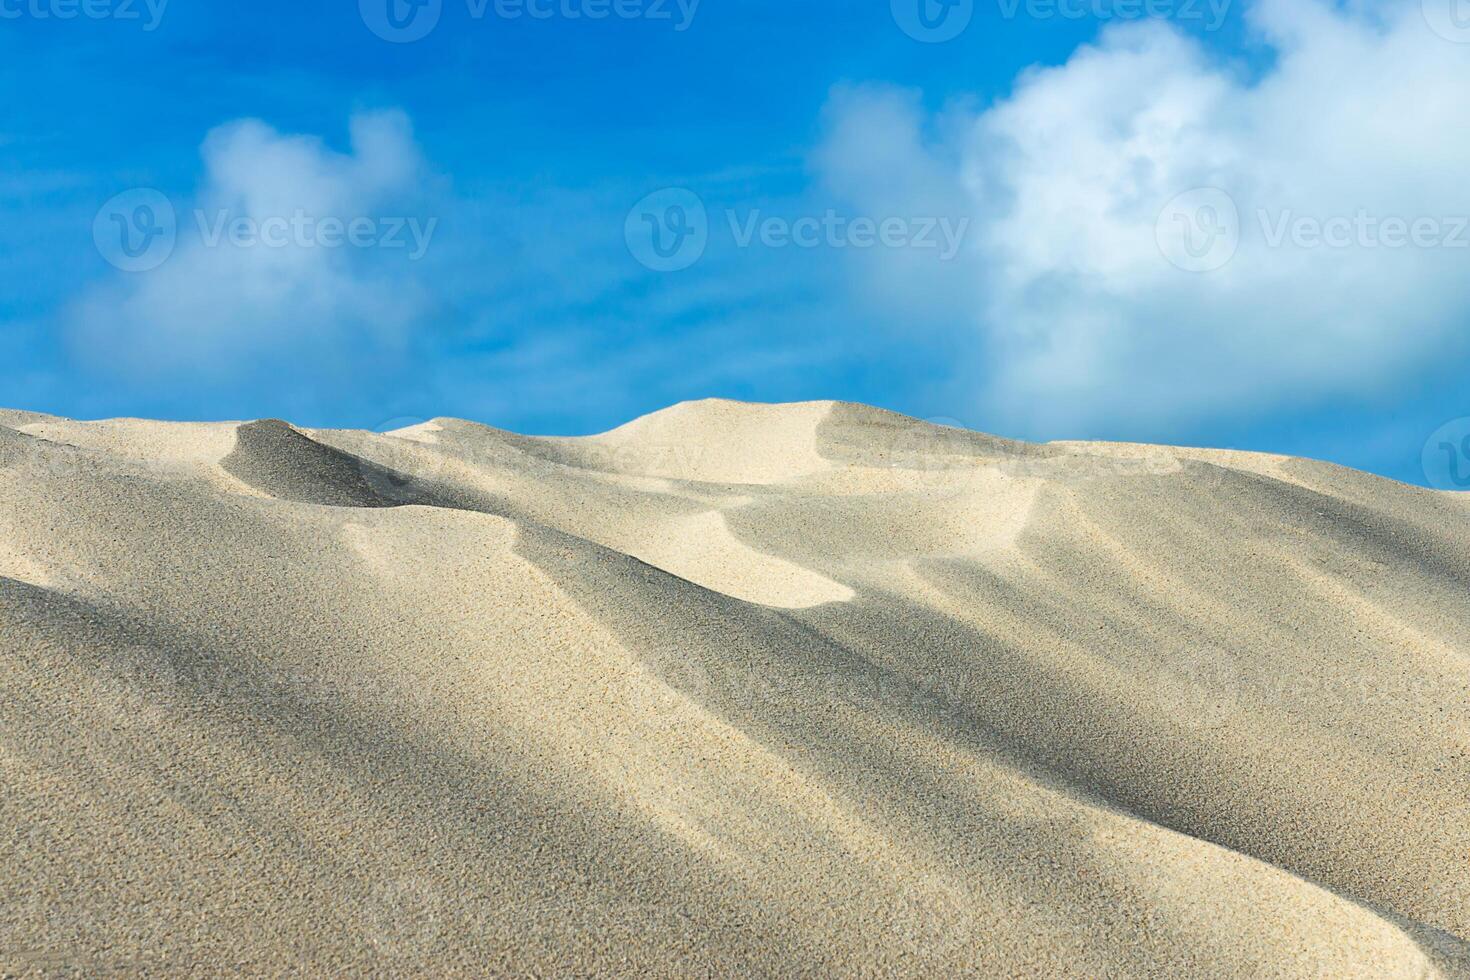 le sable Contexte texture. photo